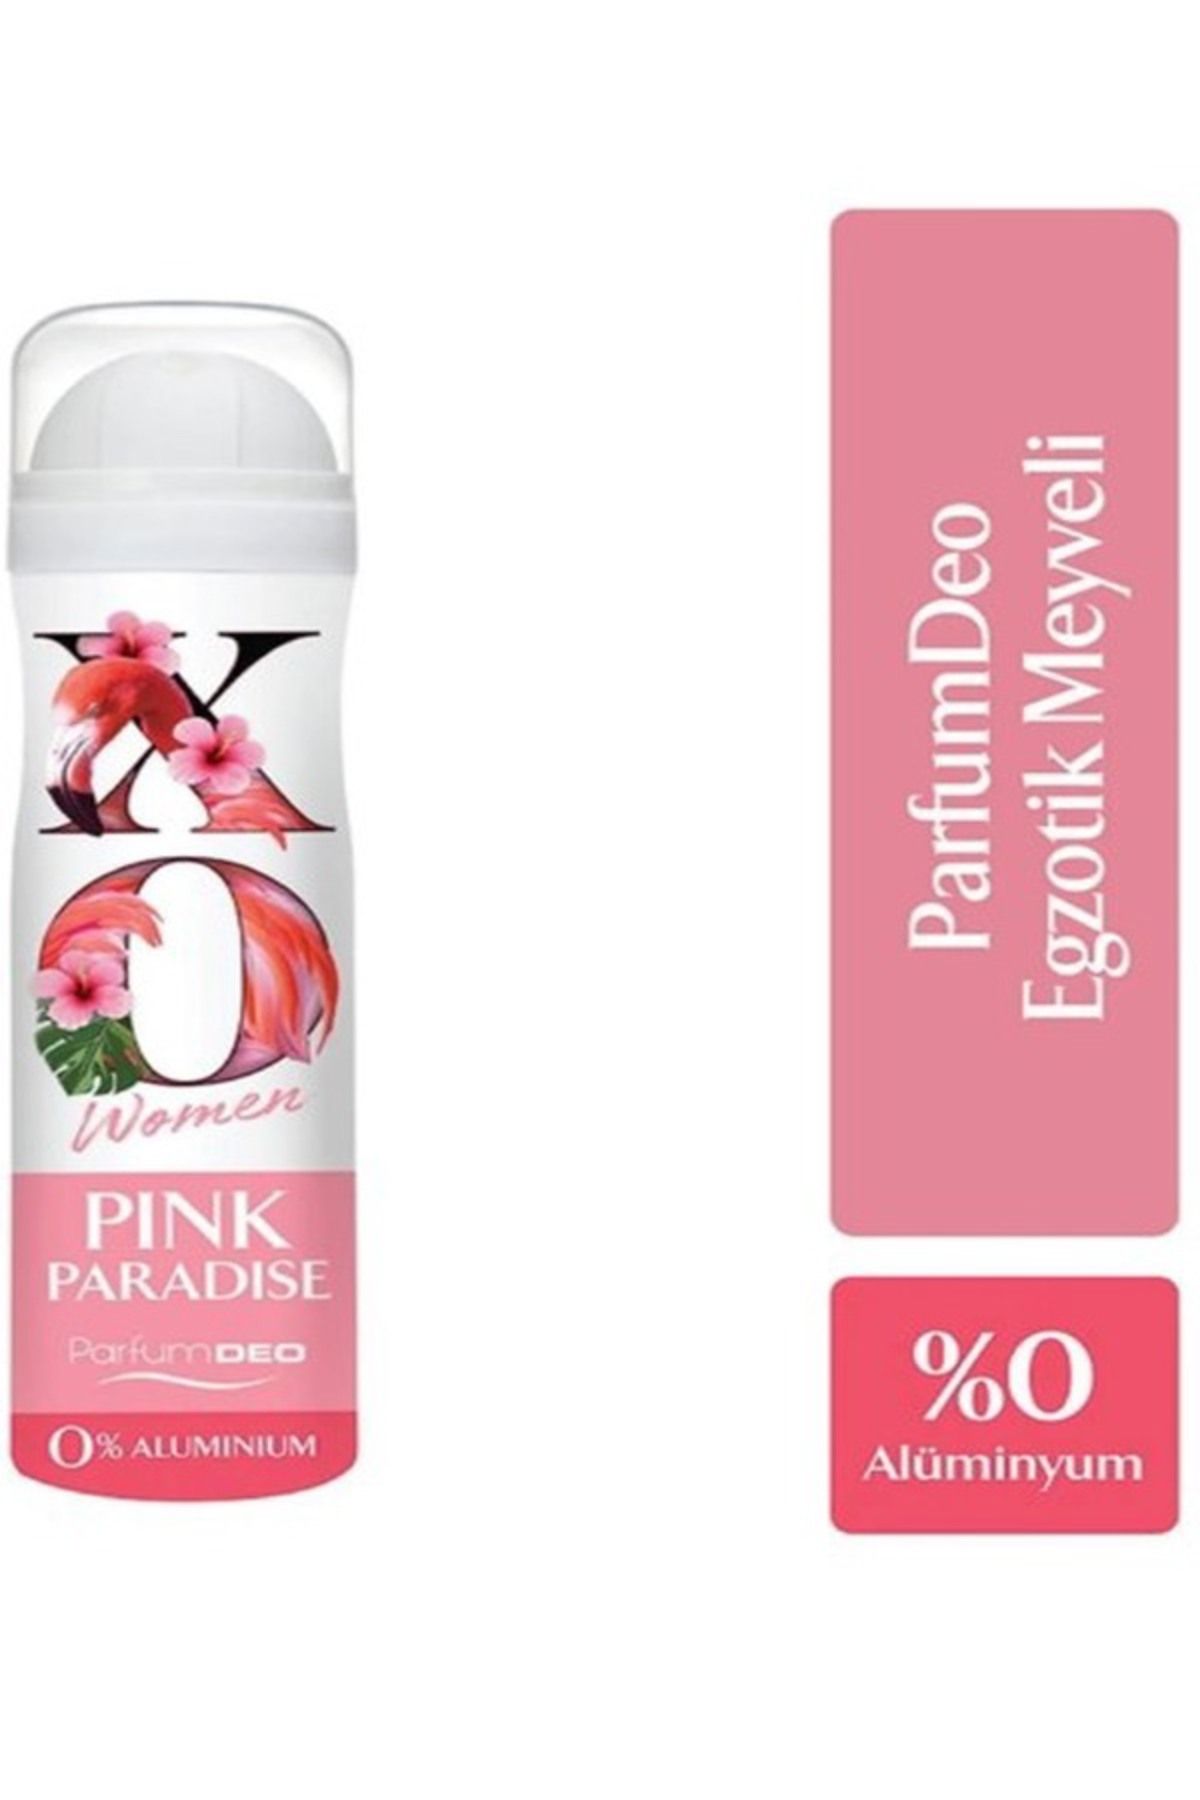 Xo Women Pink Paradise Kadın Deodorant 150 Ml